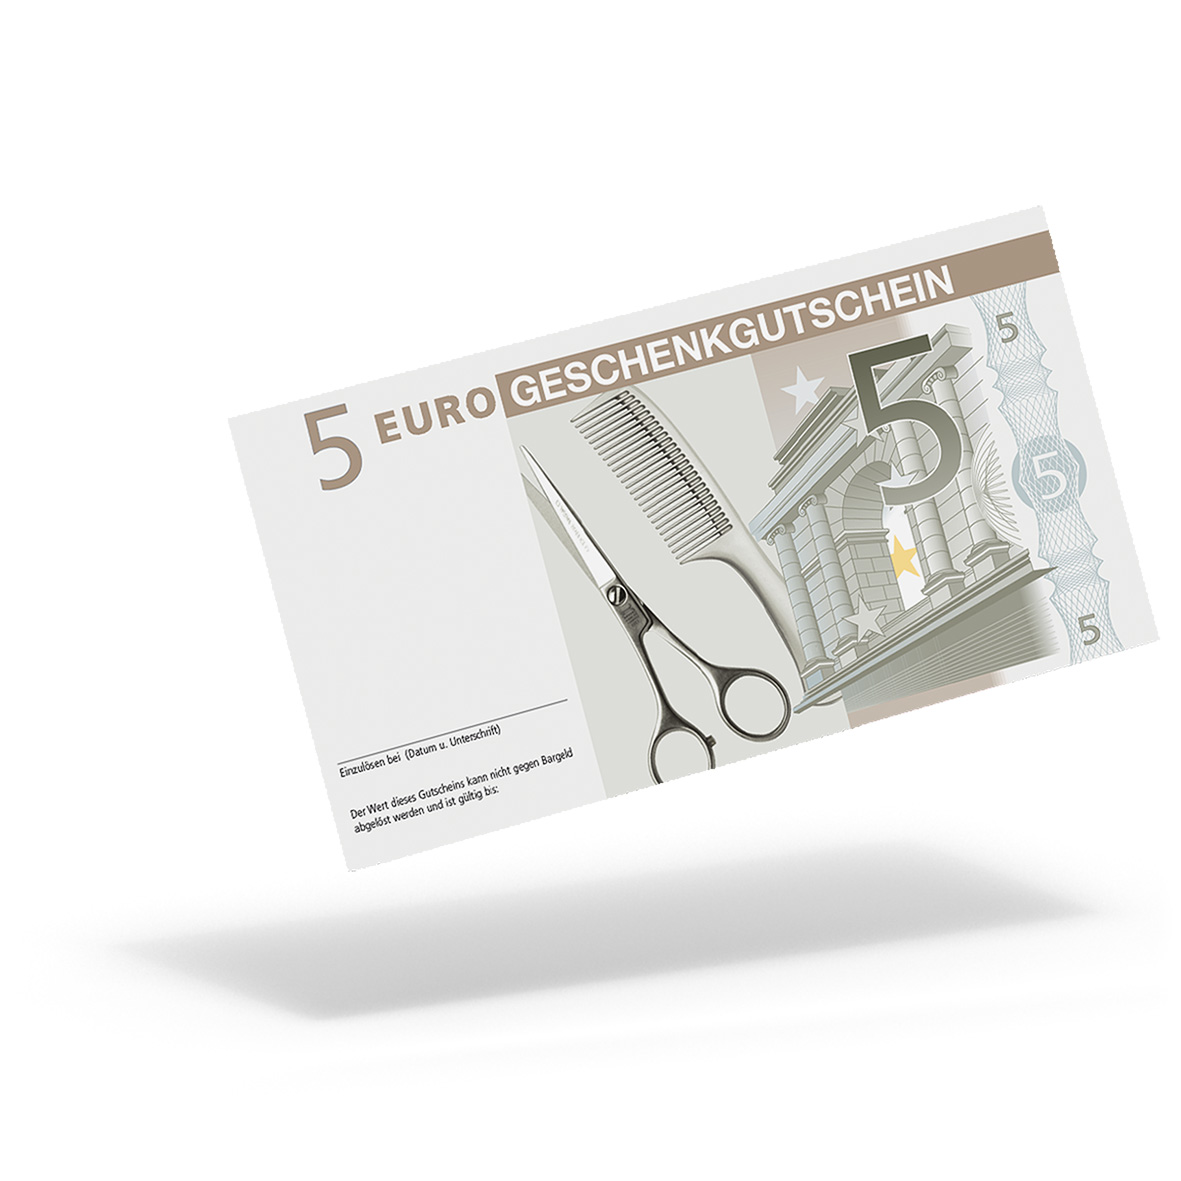 Euro Geschenkgutschein Friseur Mit 5 Euro Geschenkgutscheine Visitenkarten Kundenkarten Und Weitere Treuesysteme